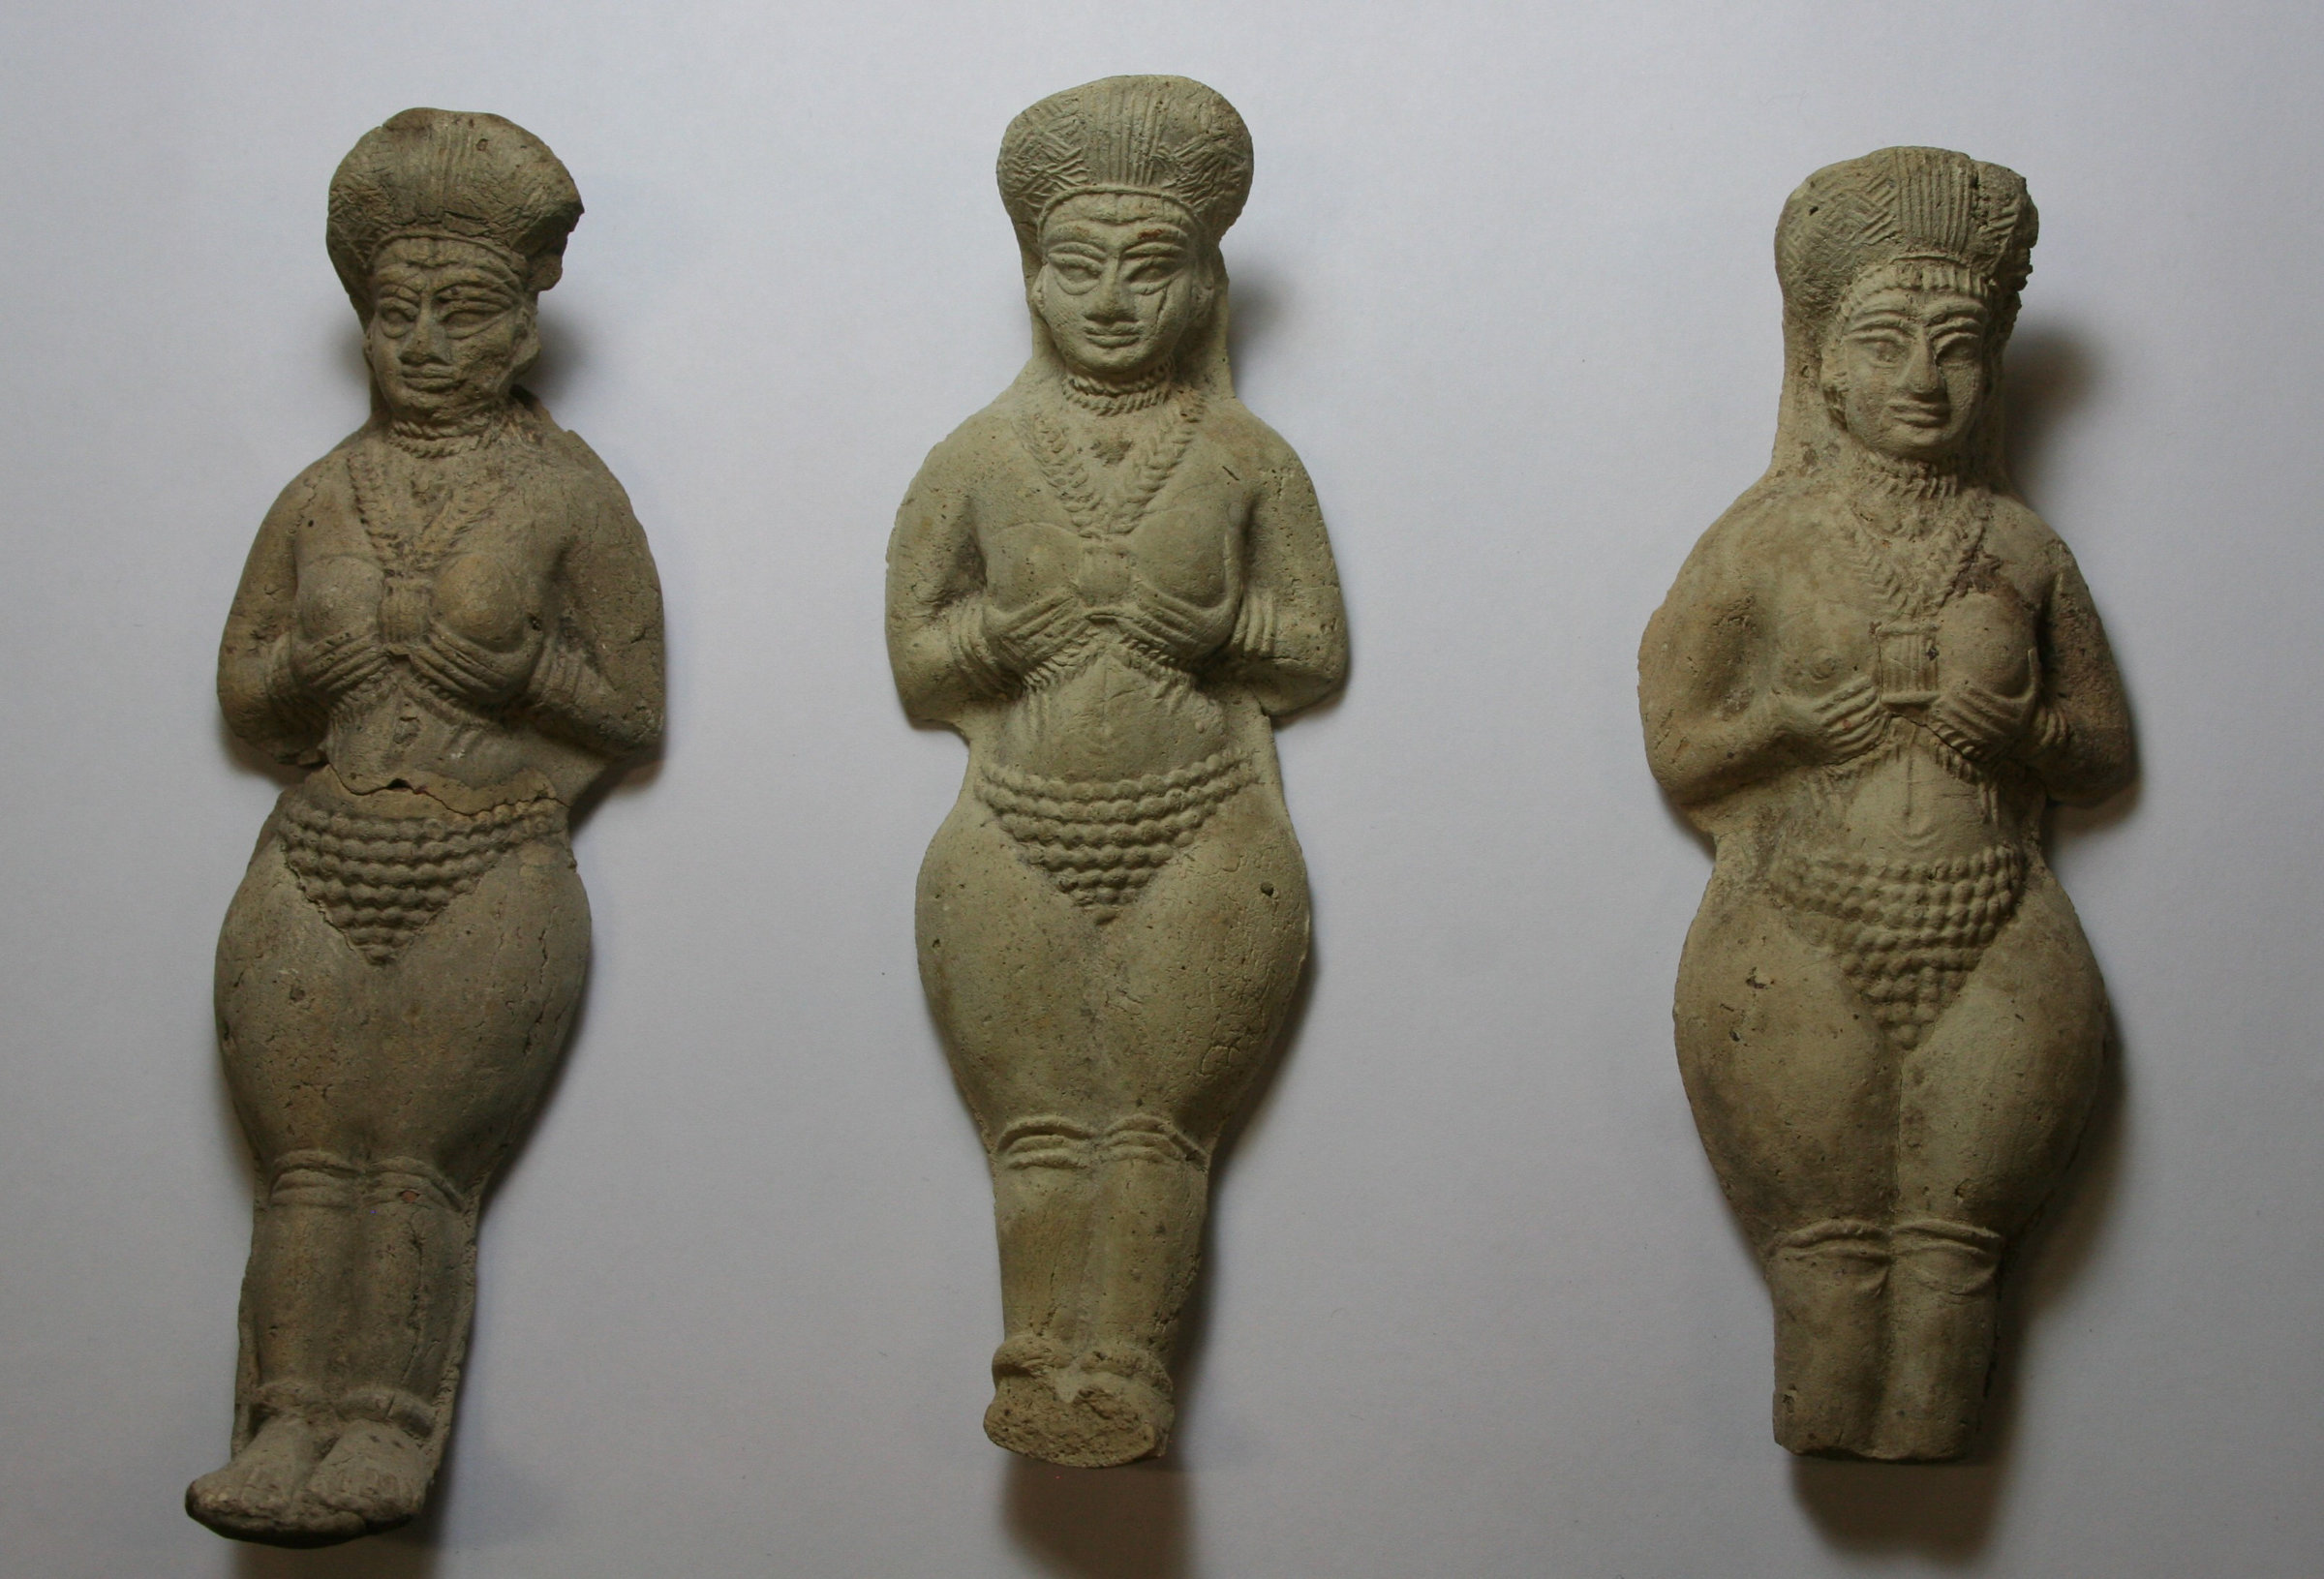 Solche mittel-elamische Figurinen (1400–1100 v. u. Z.) wurden in der älteren Forschung häufig mit Fruchtbarkeitsgottheiten in Verbindung gebracht. Bei genauerer Betrachtung spricht aber vieles gegen diese Identifizierung – u. a. dass die Figurinen häufig zerbrochen auf der Strasse gefunden wurden.